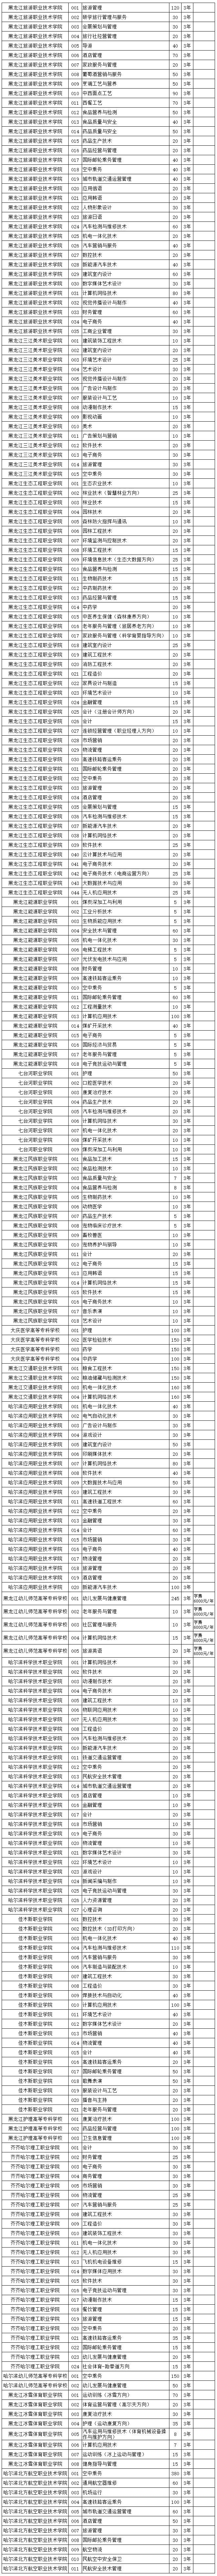 2020年黑龙江省高职院校单独招生计划公布